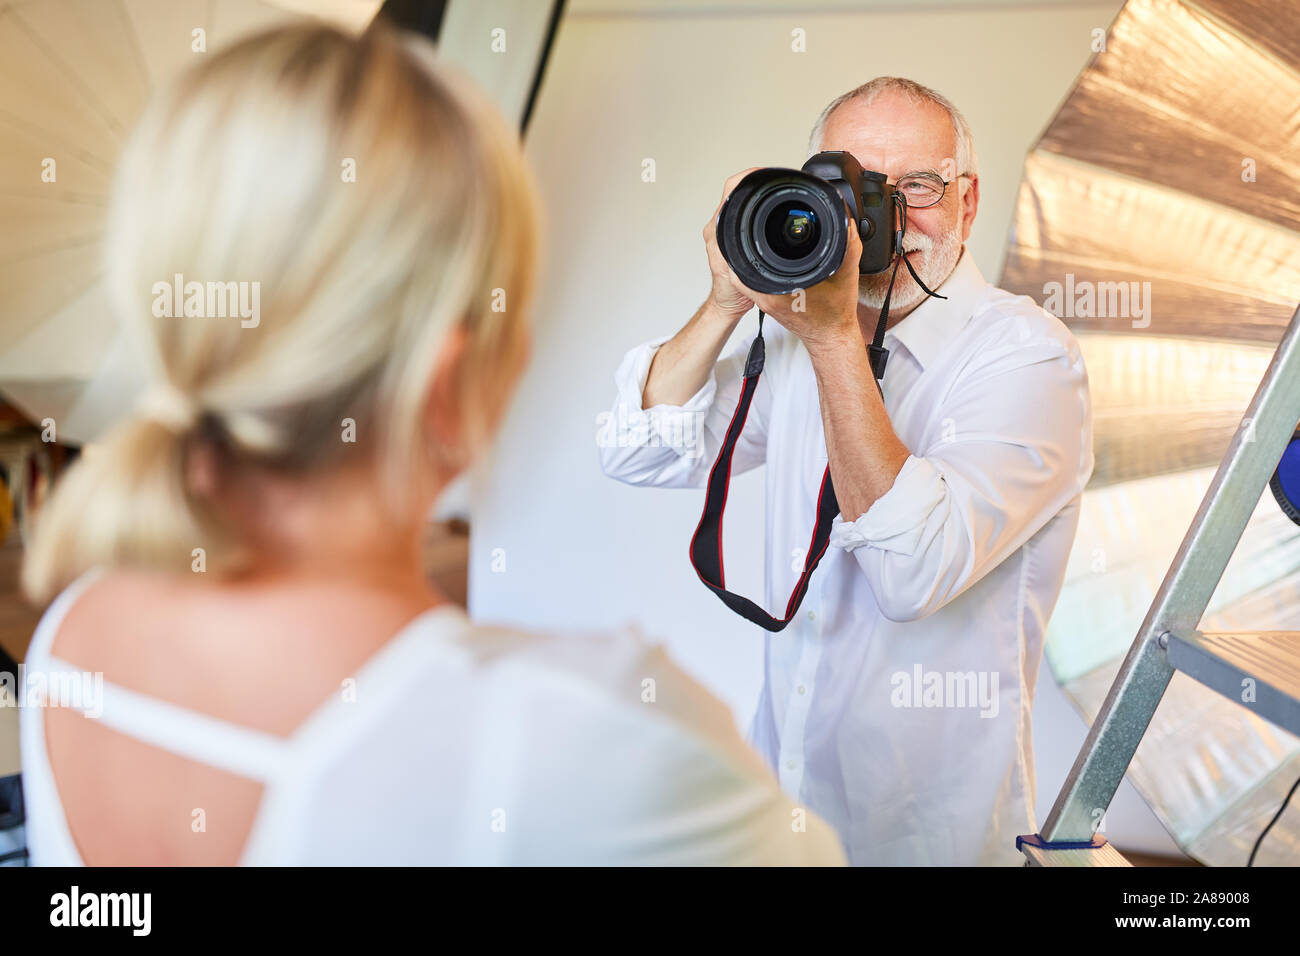 Photographe avec appareil photo numérique prend des photos portrait de femme dans le studio photo Banque D'Images